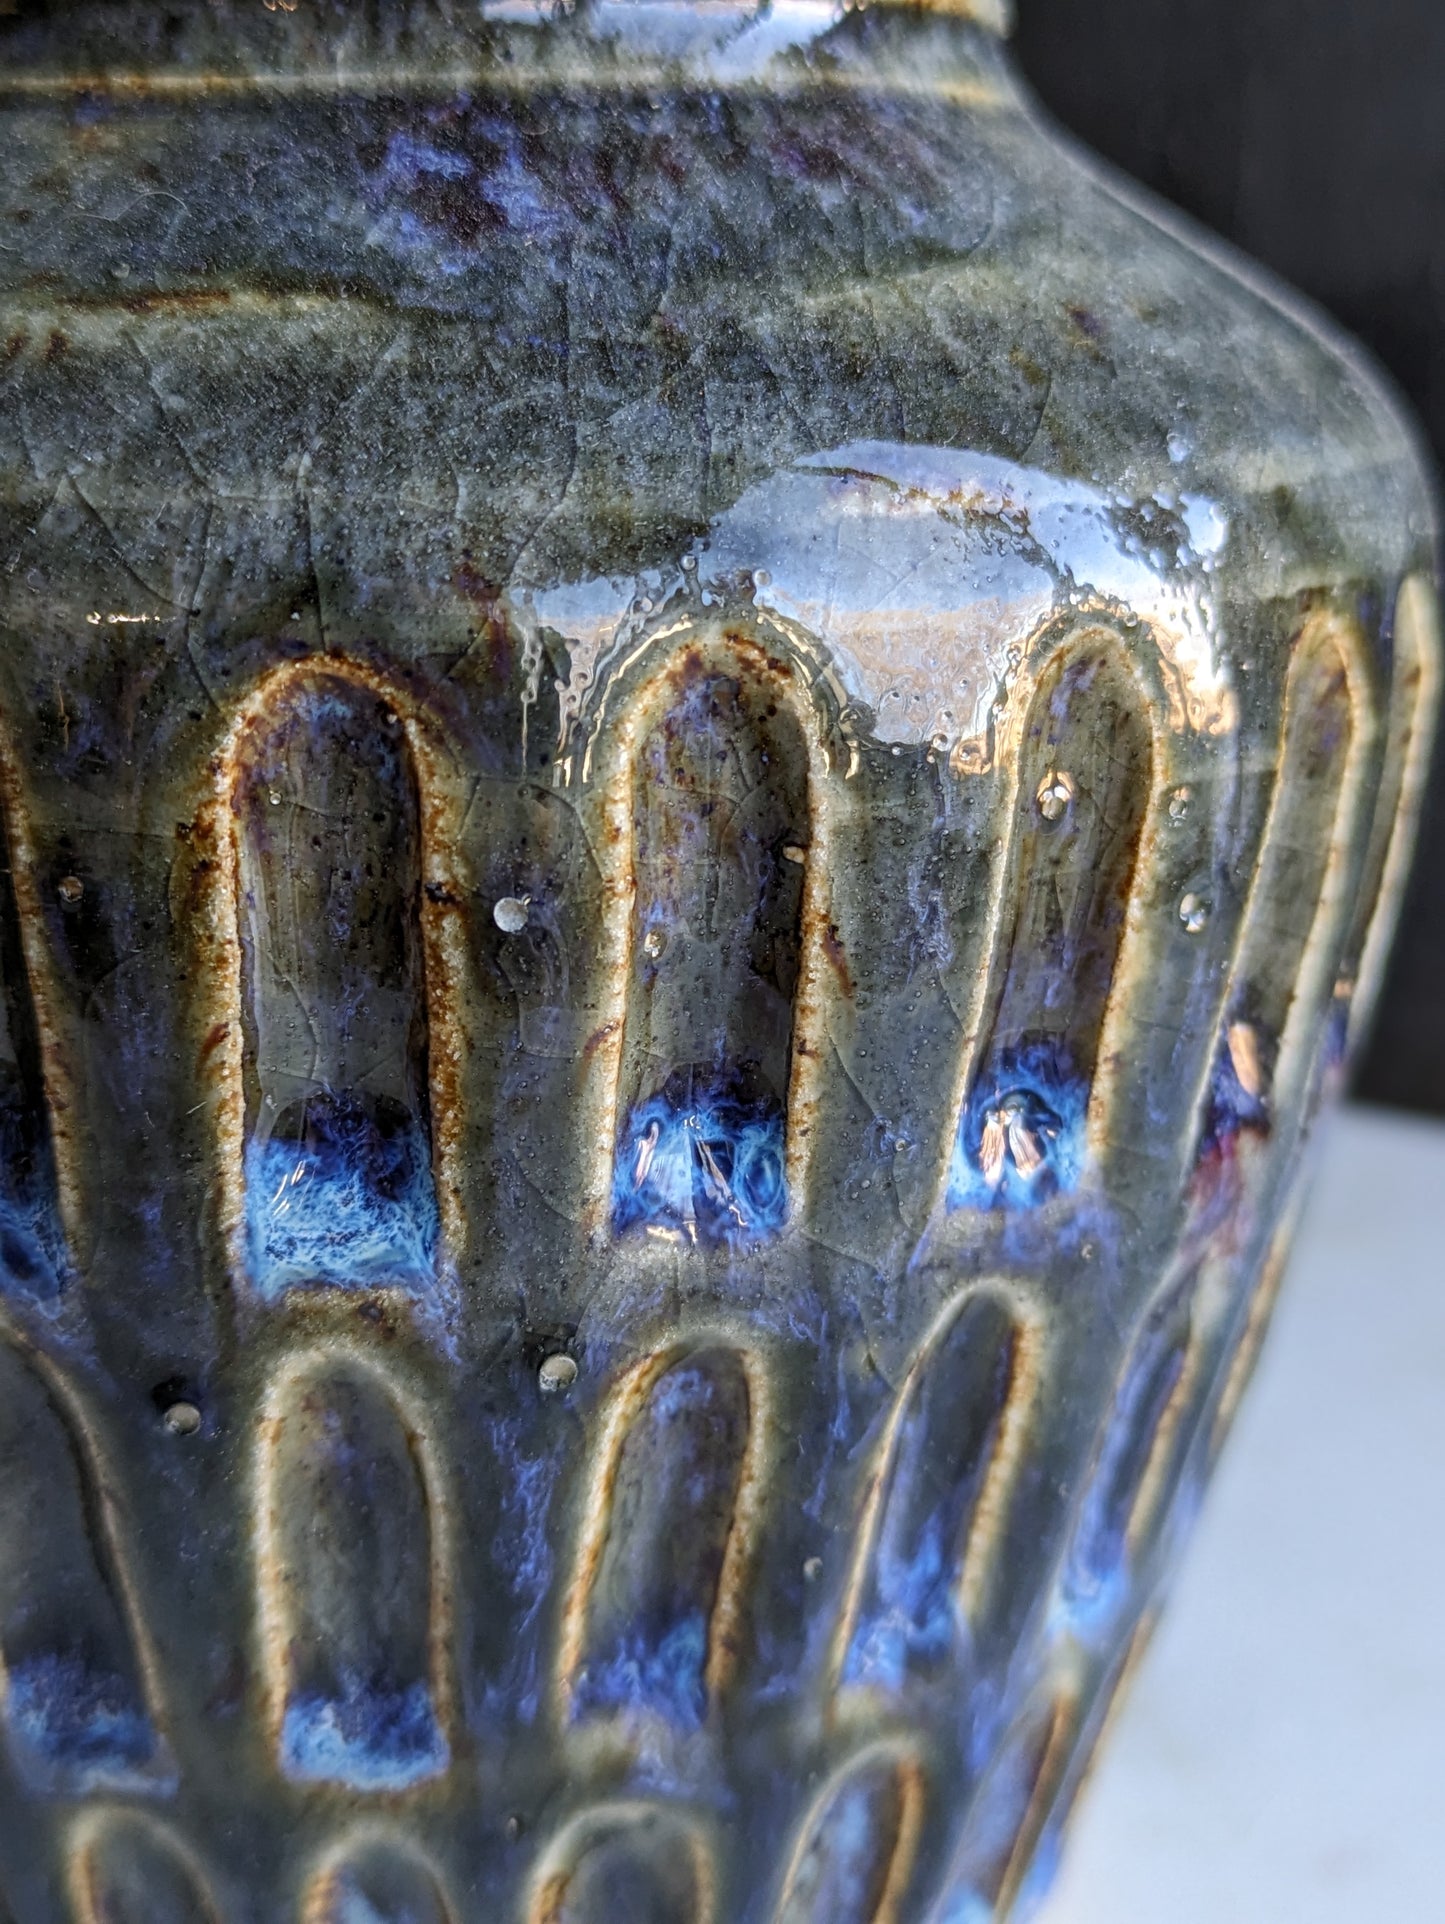 1000 Nights Carved Ceramic Vase 5"